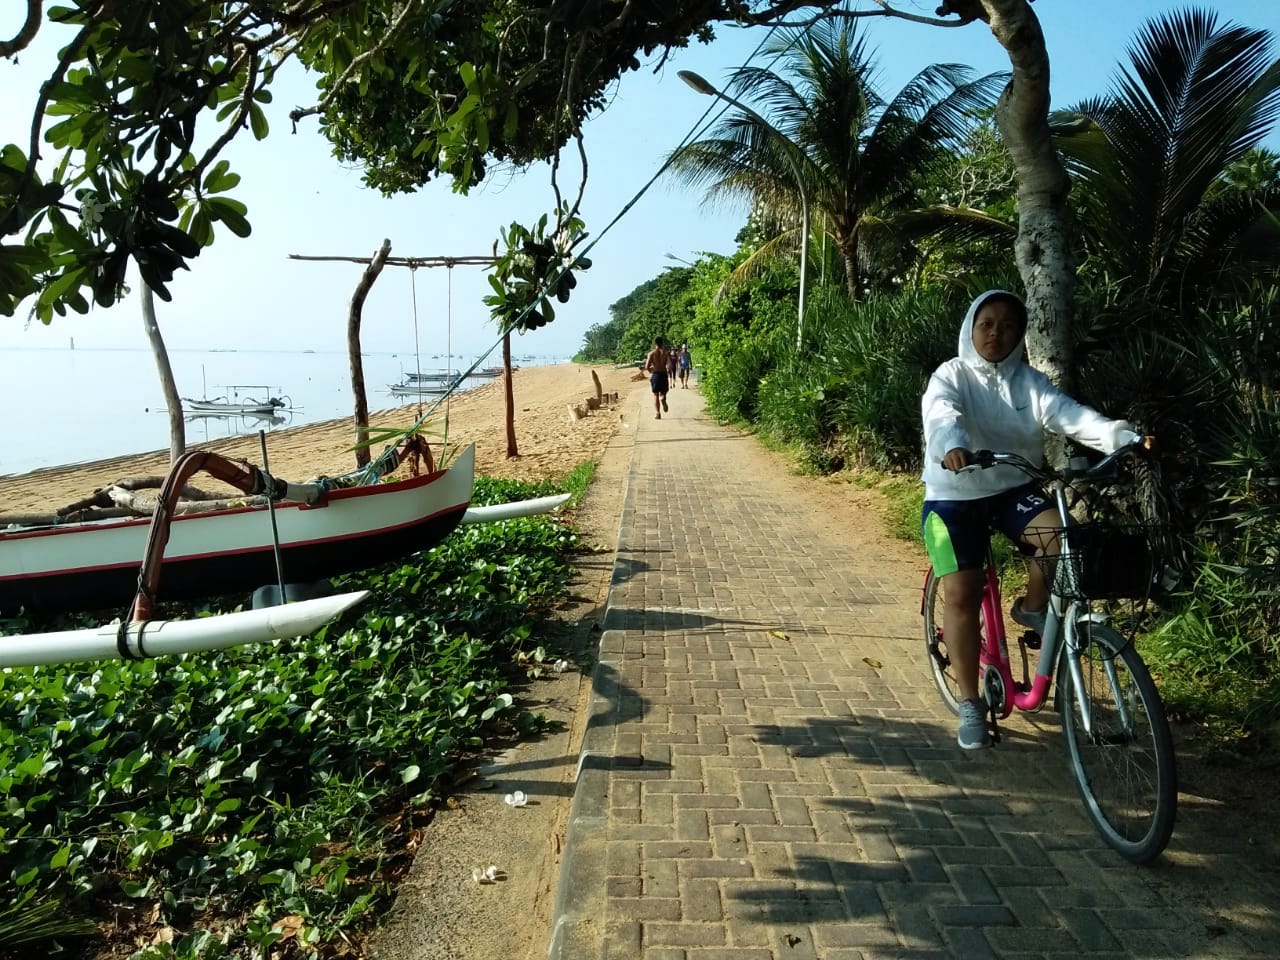 Jalan setapak di kawasan pantai Sanur, Denpasar, Bali, untuk joging atau naik sepeda ini paling padat saat akhir pekan | Foto: Luh De Suriyani/Mongabay Indonesia